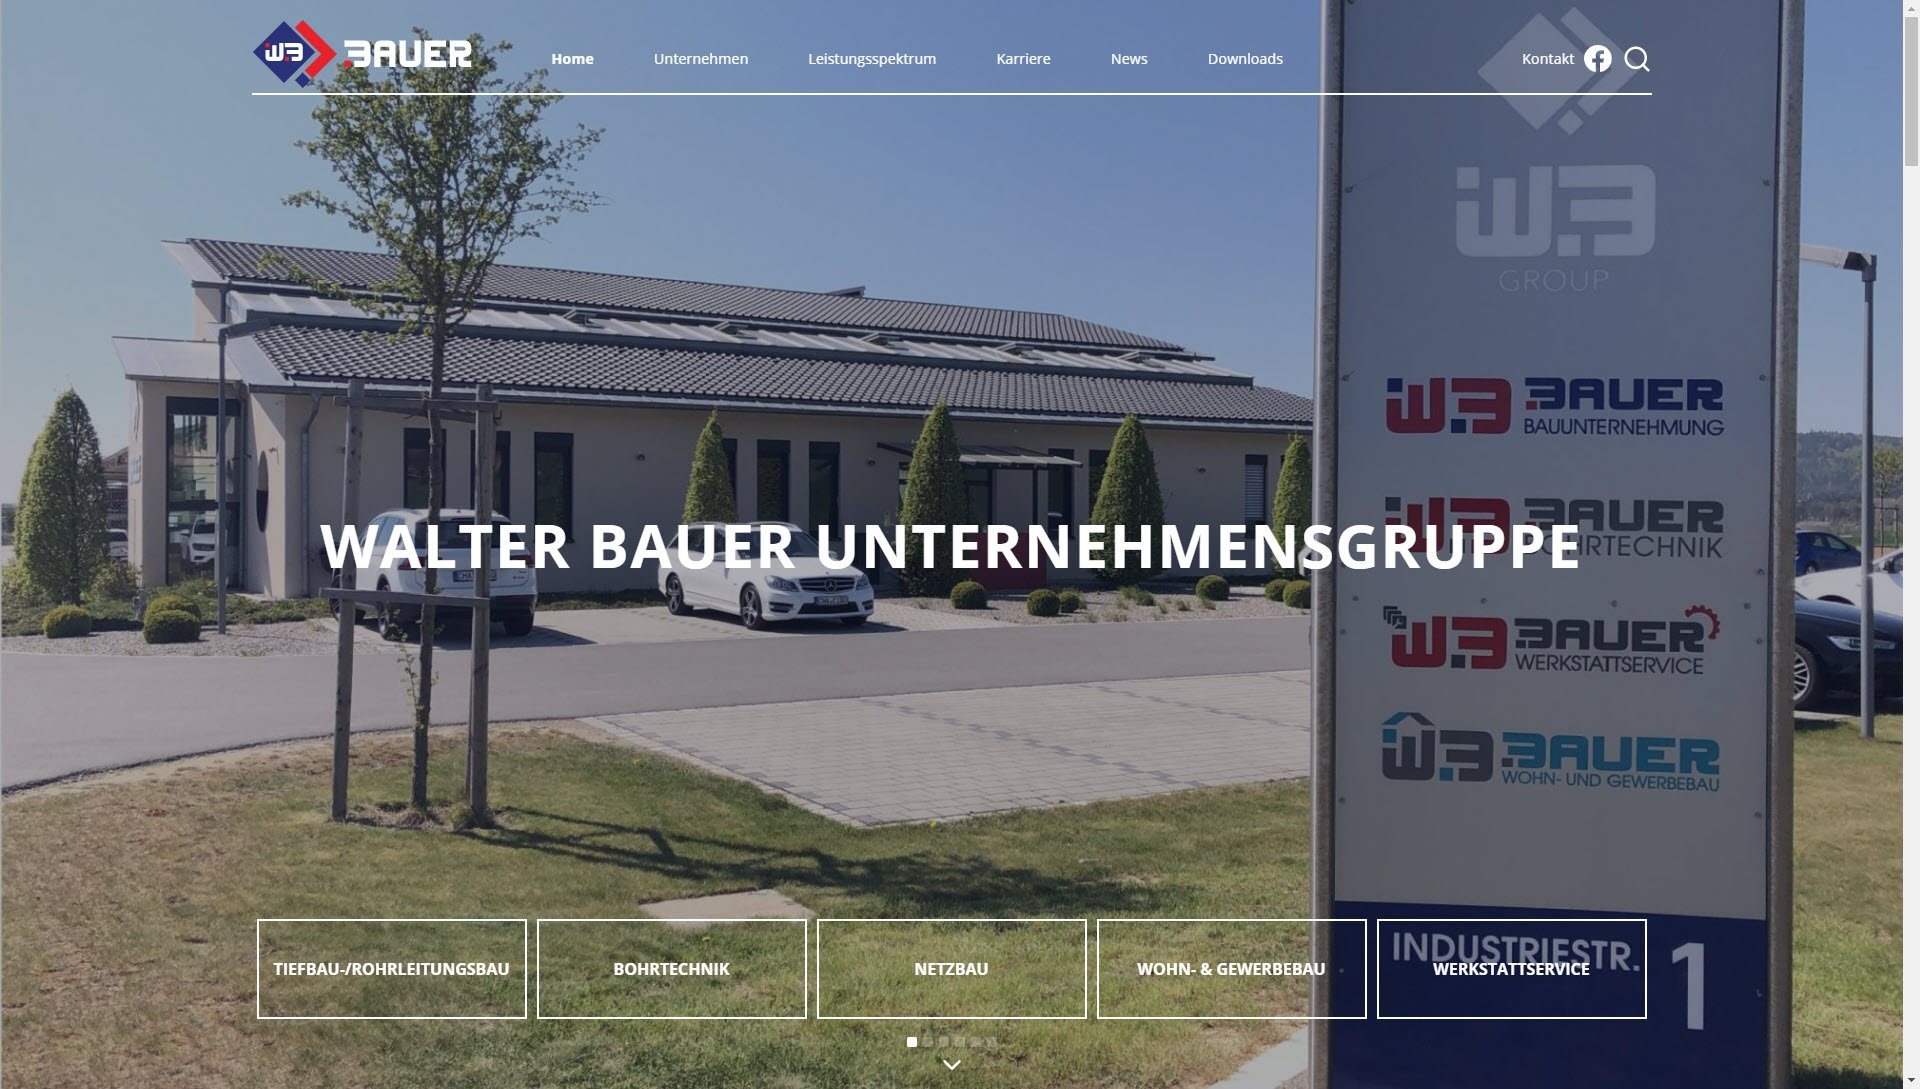 Walter Bauer GmbH & Co. KG